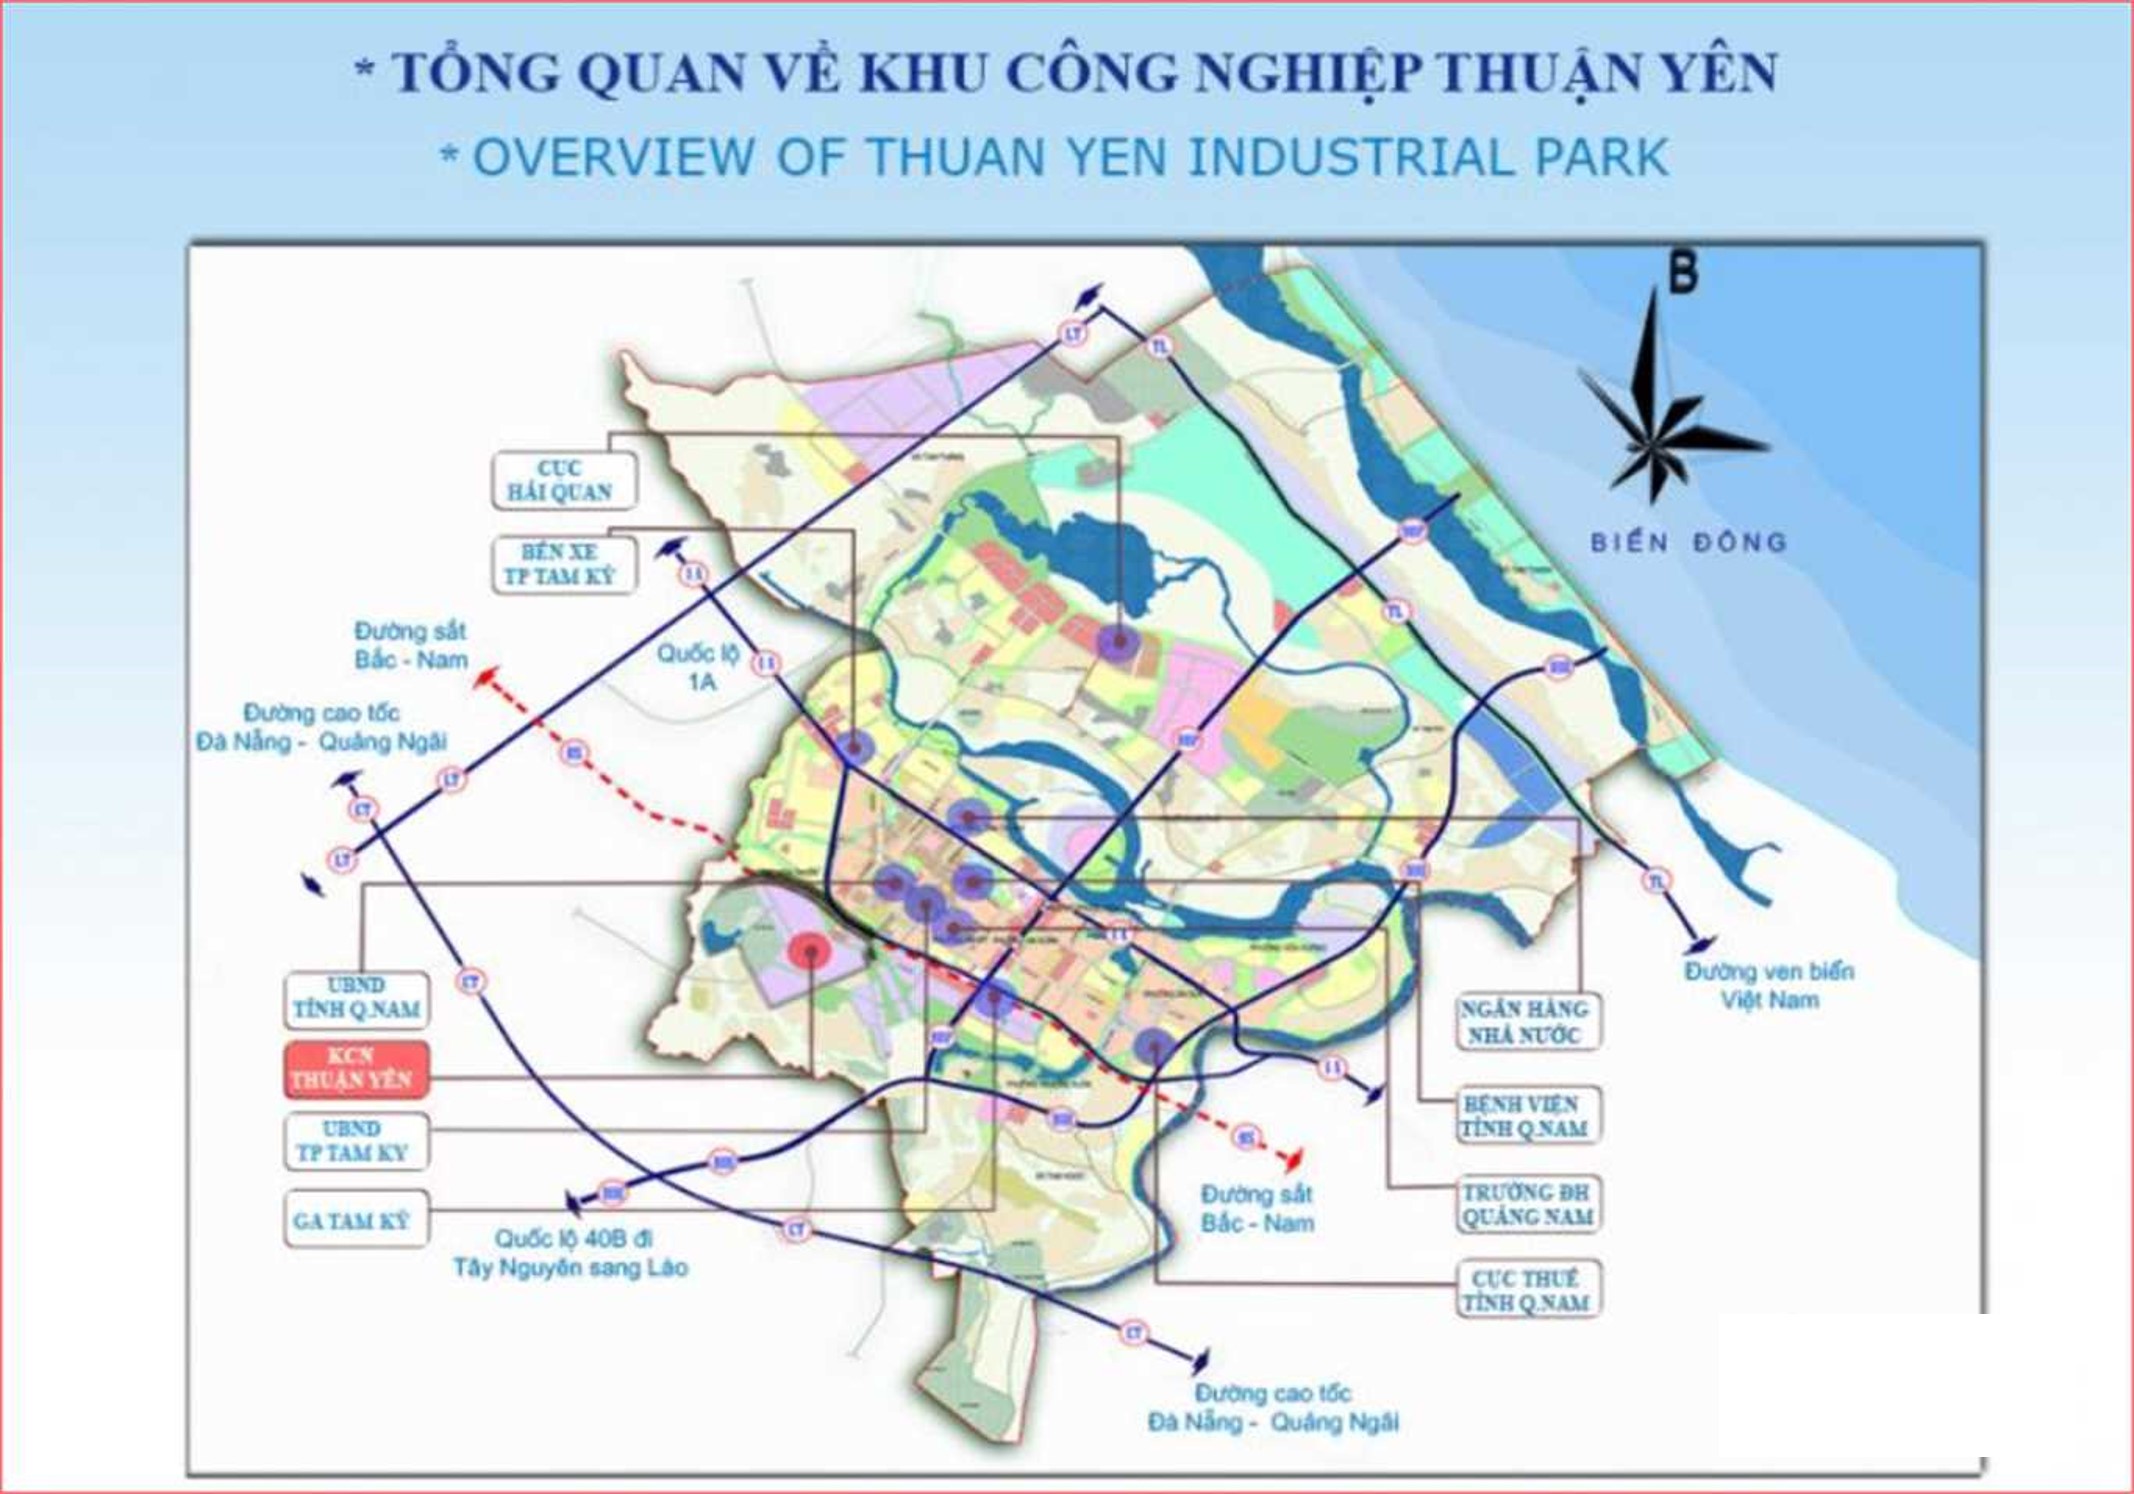 Thuan Yen Industrial Park